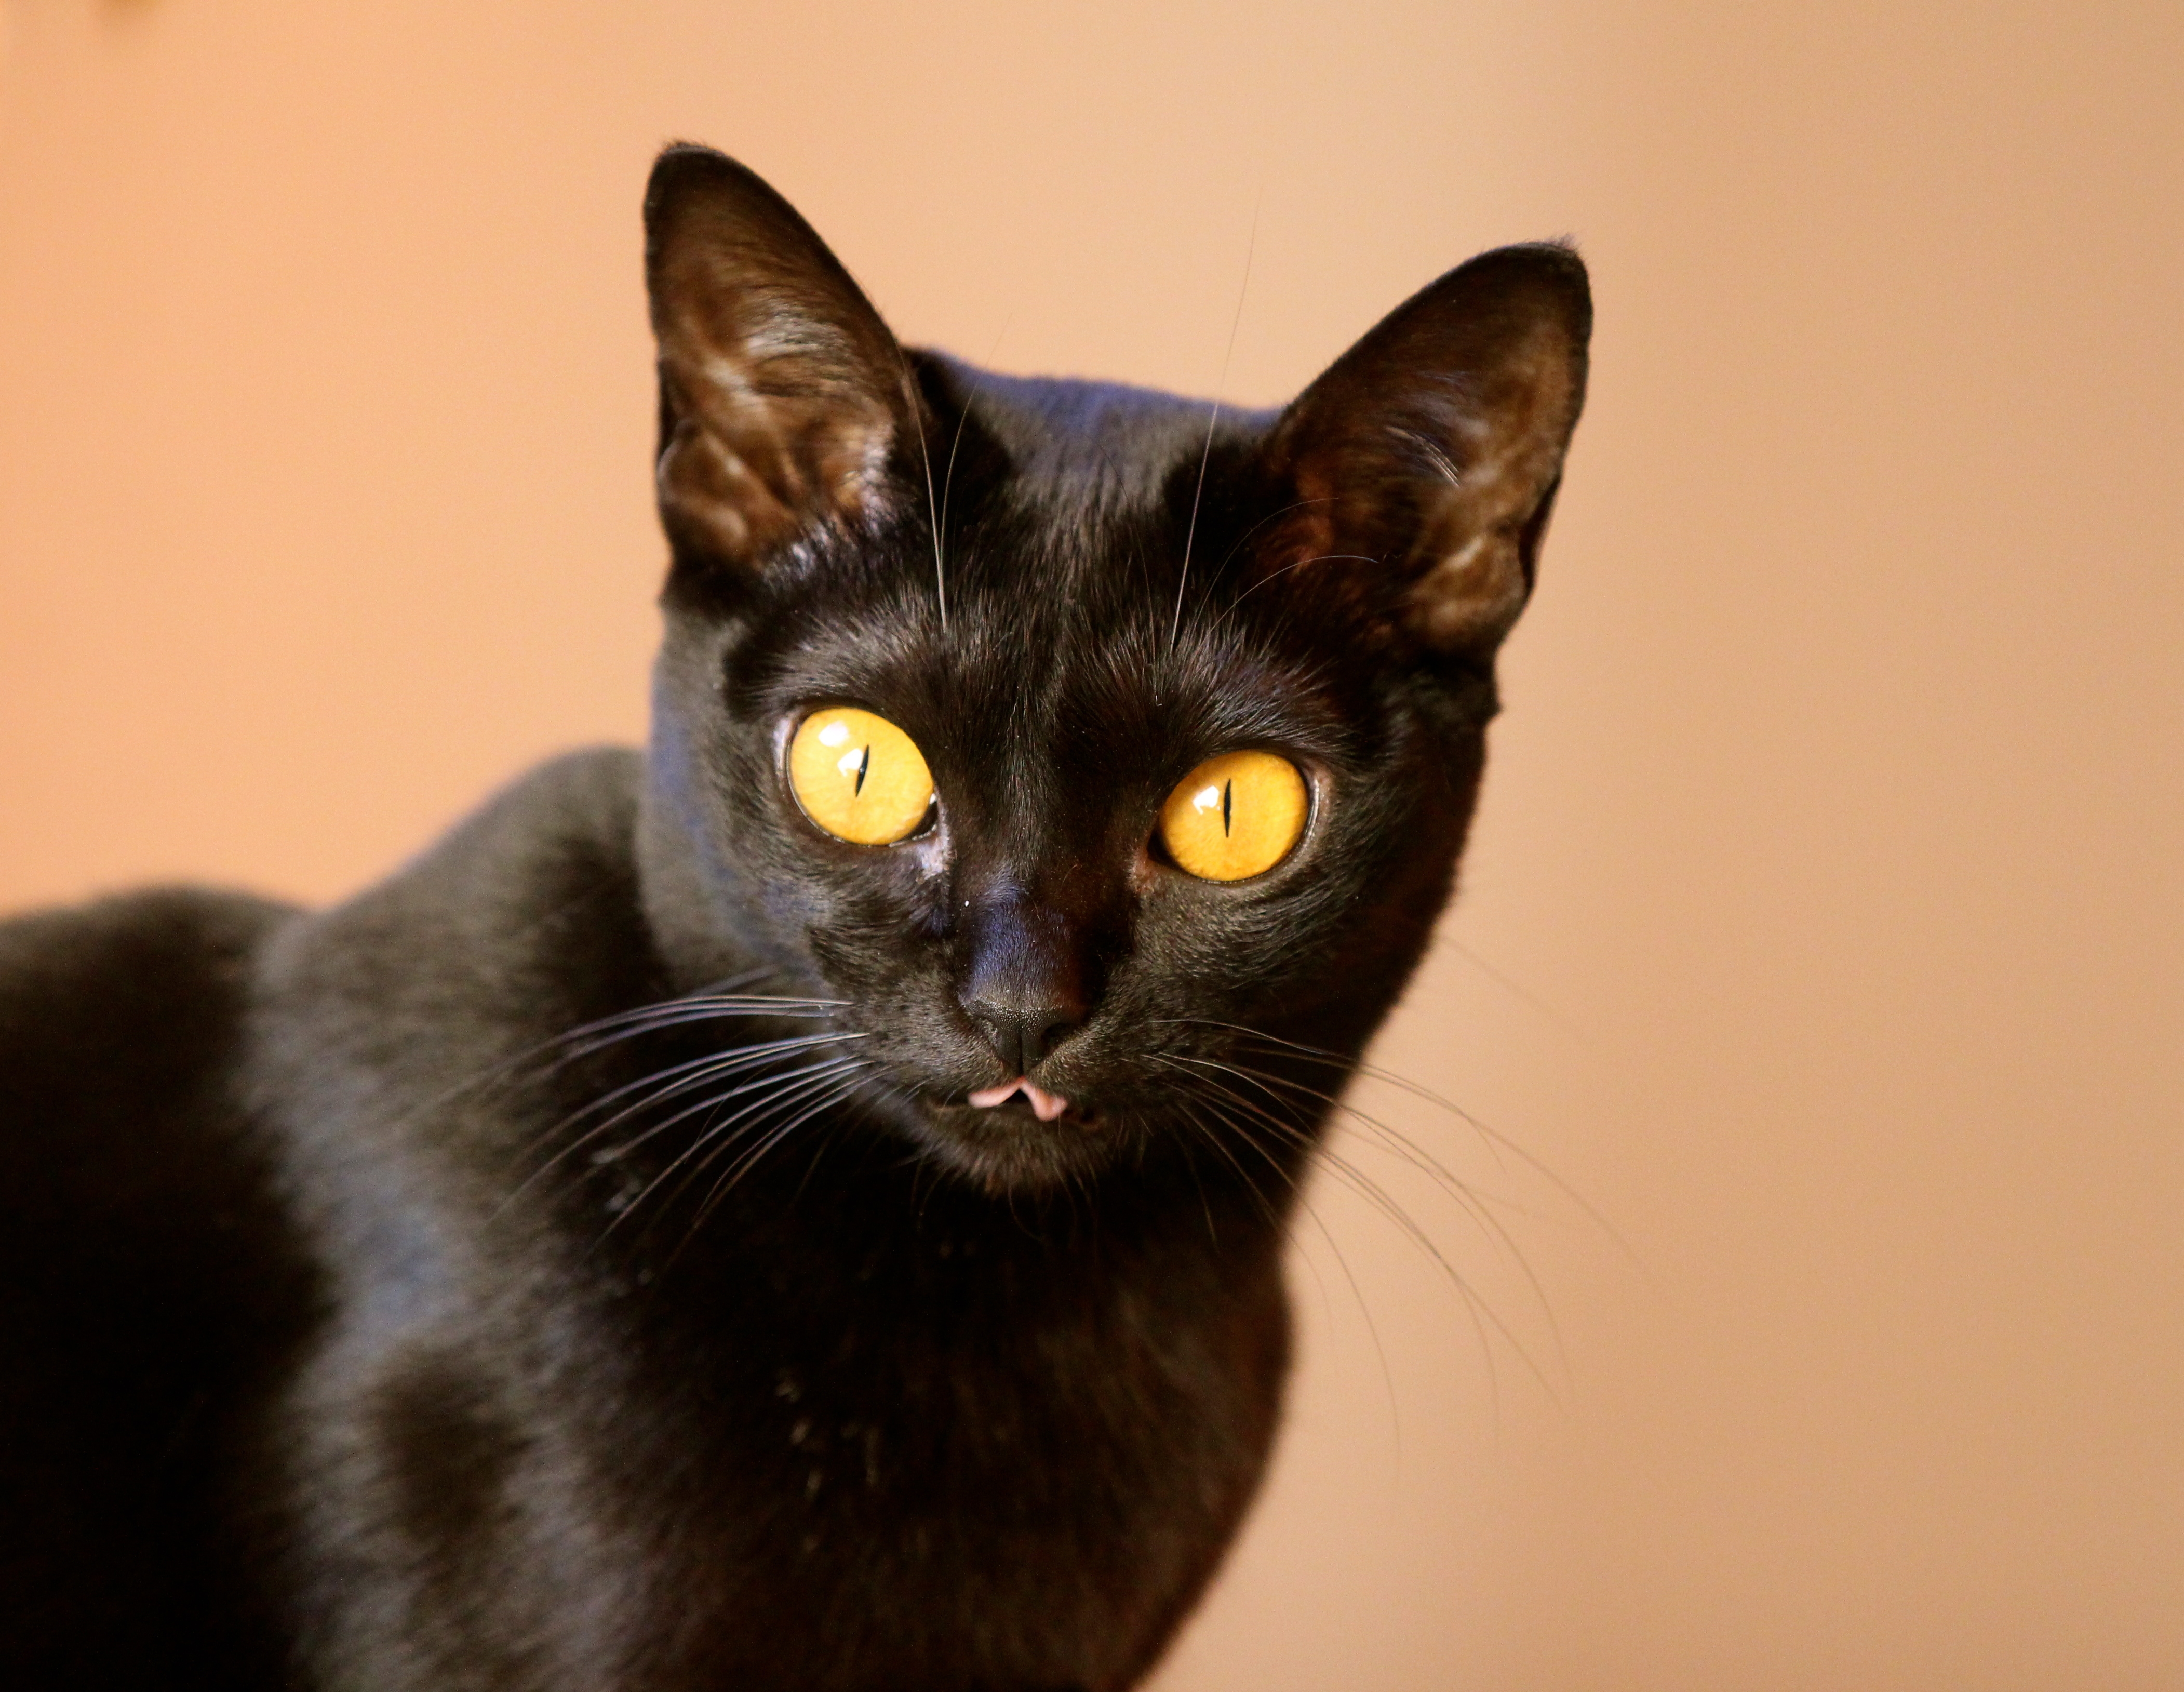 Описание черной кошки. Бомбейская кошка. Чёрная кошка порода Бомбейская. Британская Бомбейская кошка. Бомбей и Бомбейская кошка.